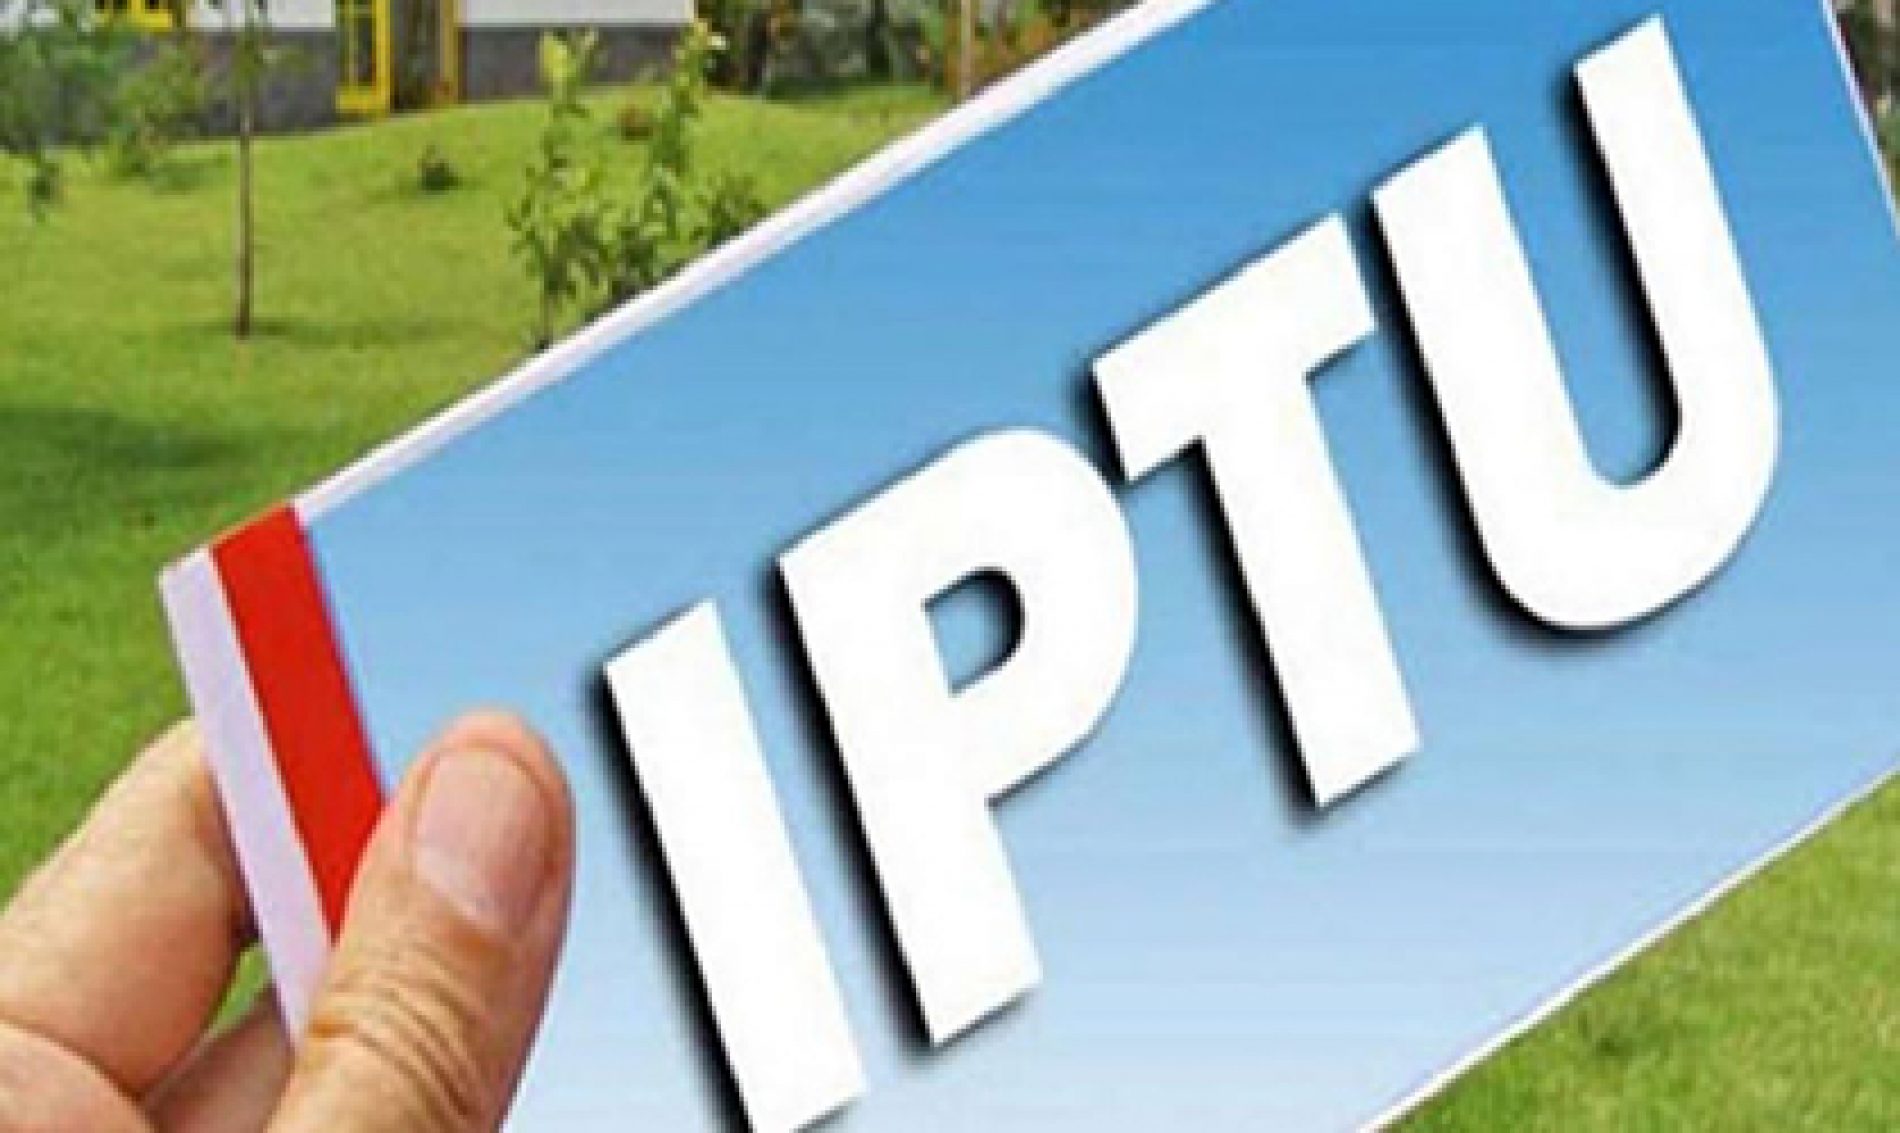 BARRETOS: Boletos para pagamento de IPTU e taxas com novos prazos devem ser solicitados até a próxima sexta-feira, 31 de julho/2020, na Prefeitura